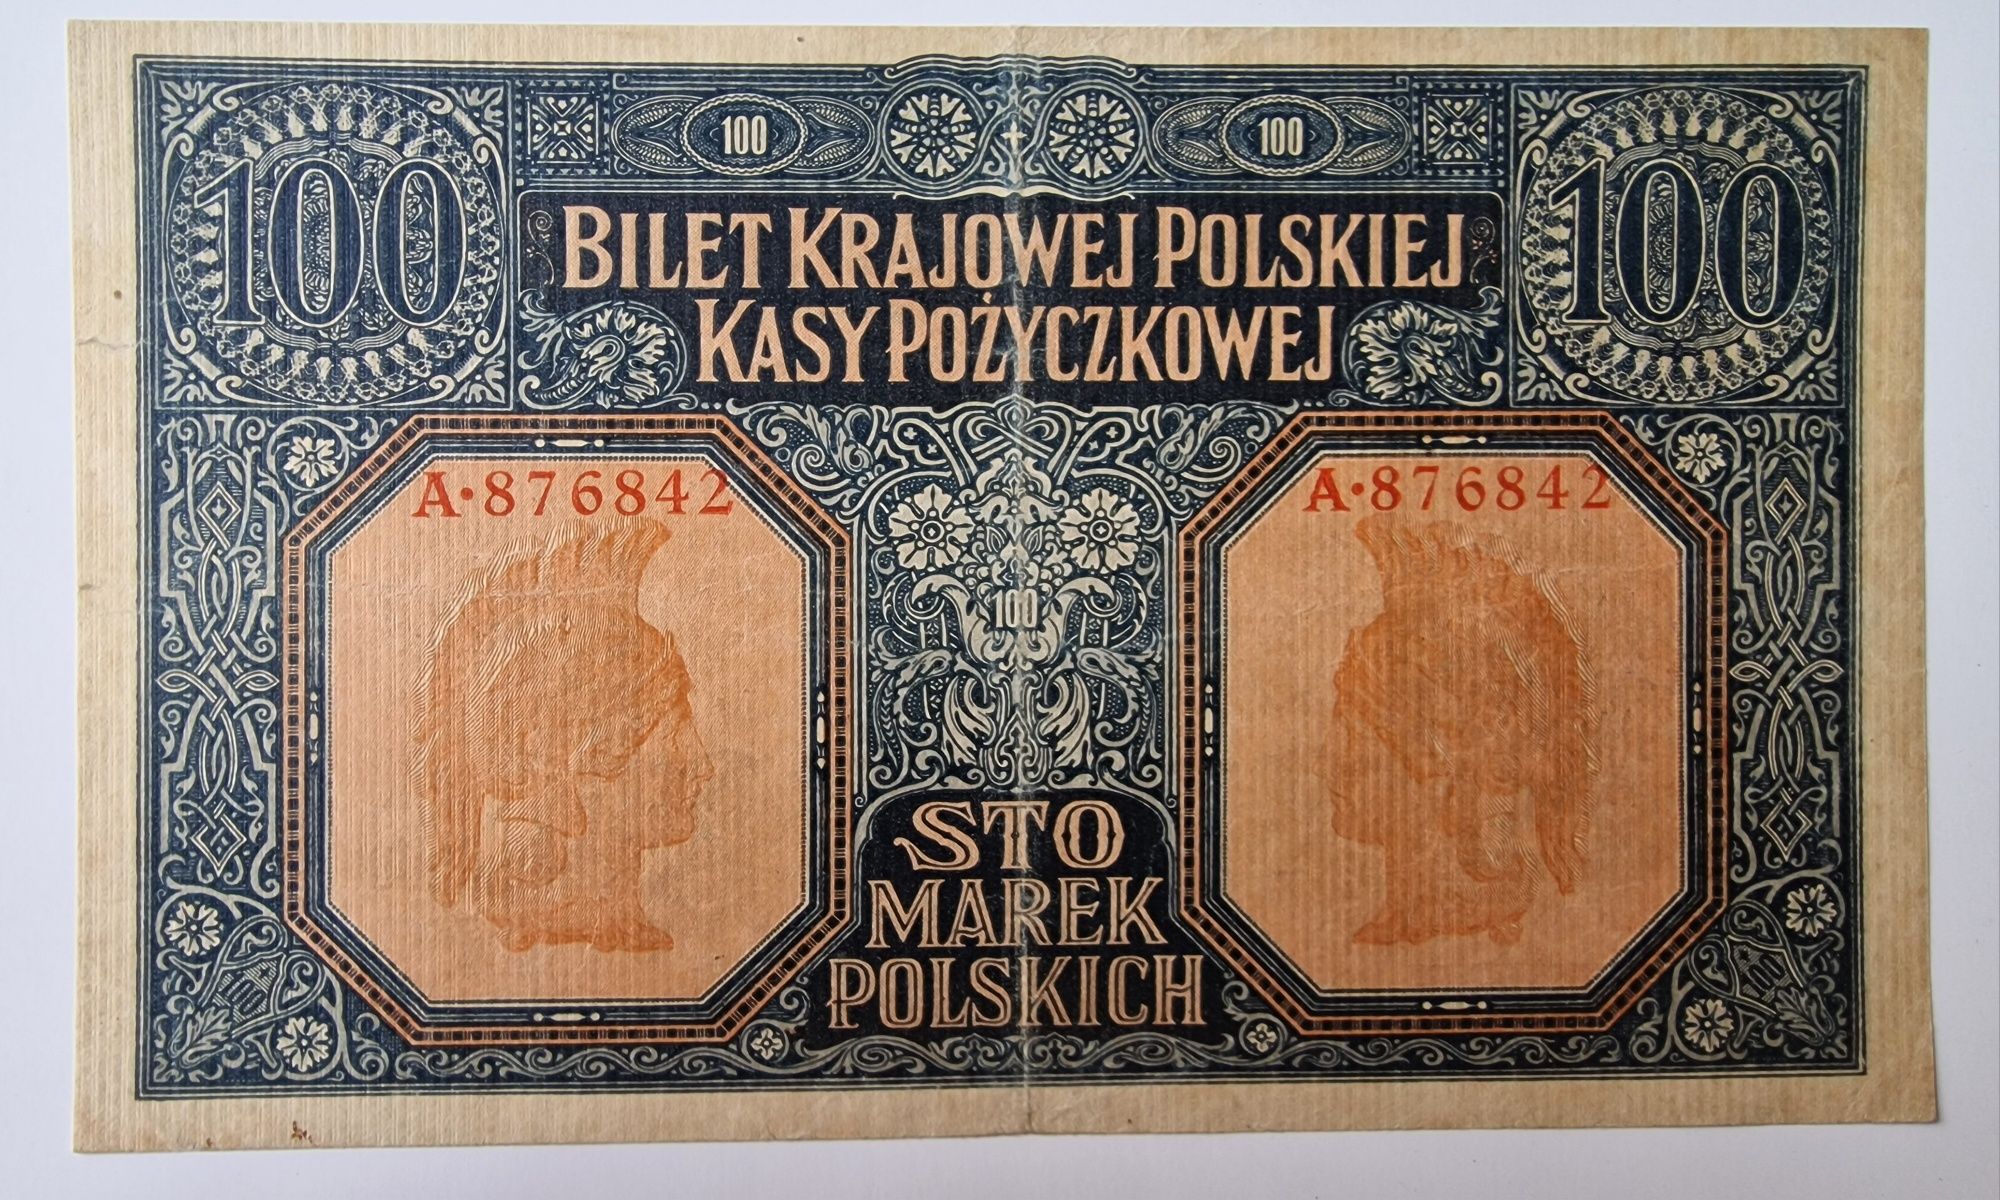 100 marek jenerał 1916 roku w pięknym stanie